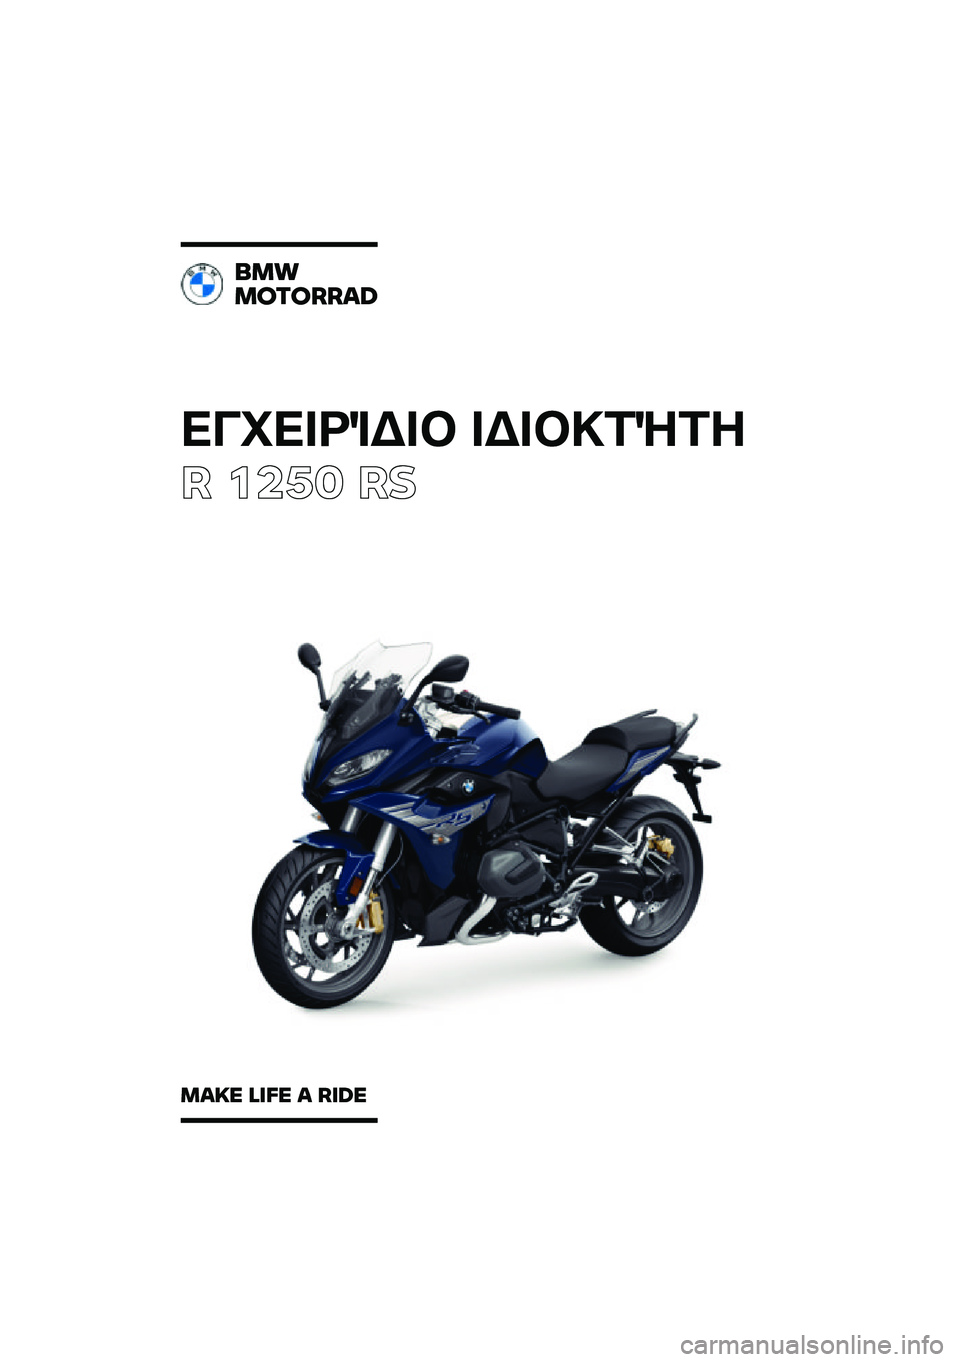 BMW MOTORRAD R 1250 RS 2021  Εγχειρίδιο ιδιοκτήτη (in Greek) ��������\b��	 ��\b��	�
��\f��
� ����	 ��
���
�������\b�	
��\b�
� �\f�
�� �\b ��
�	� 